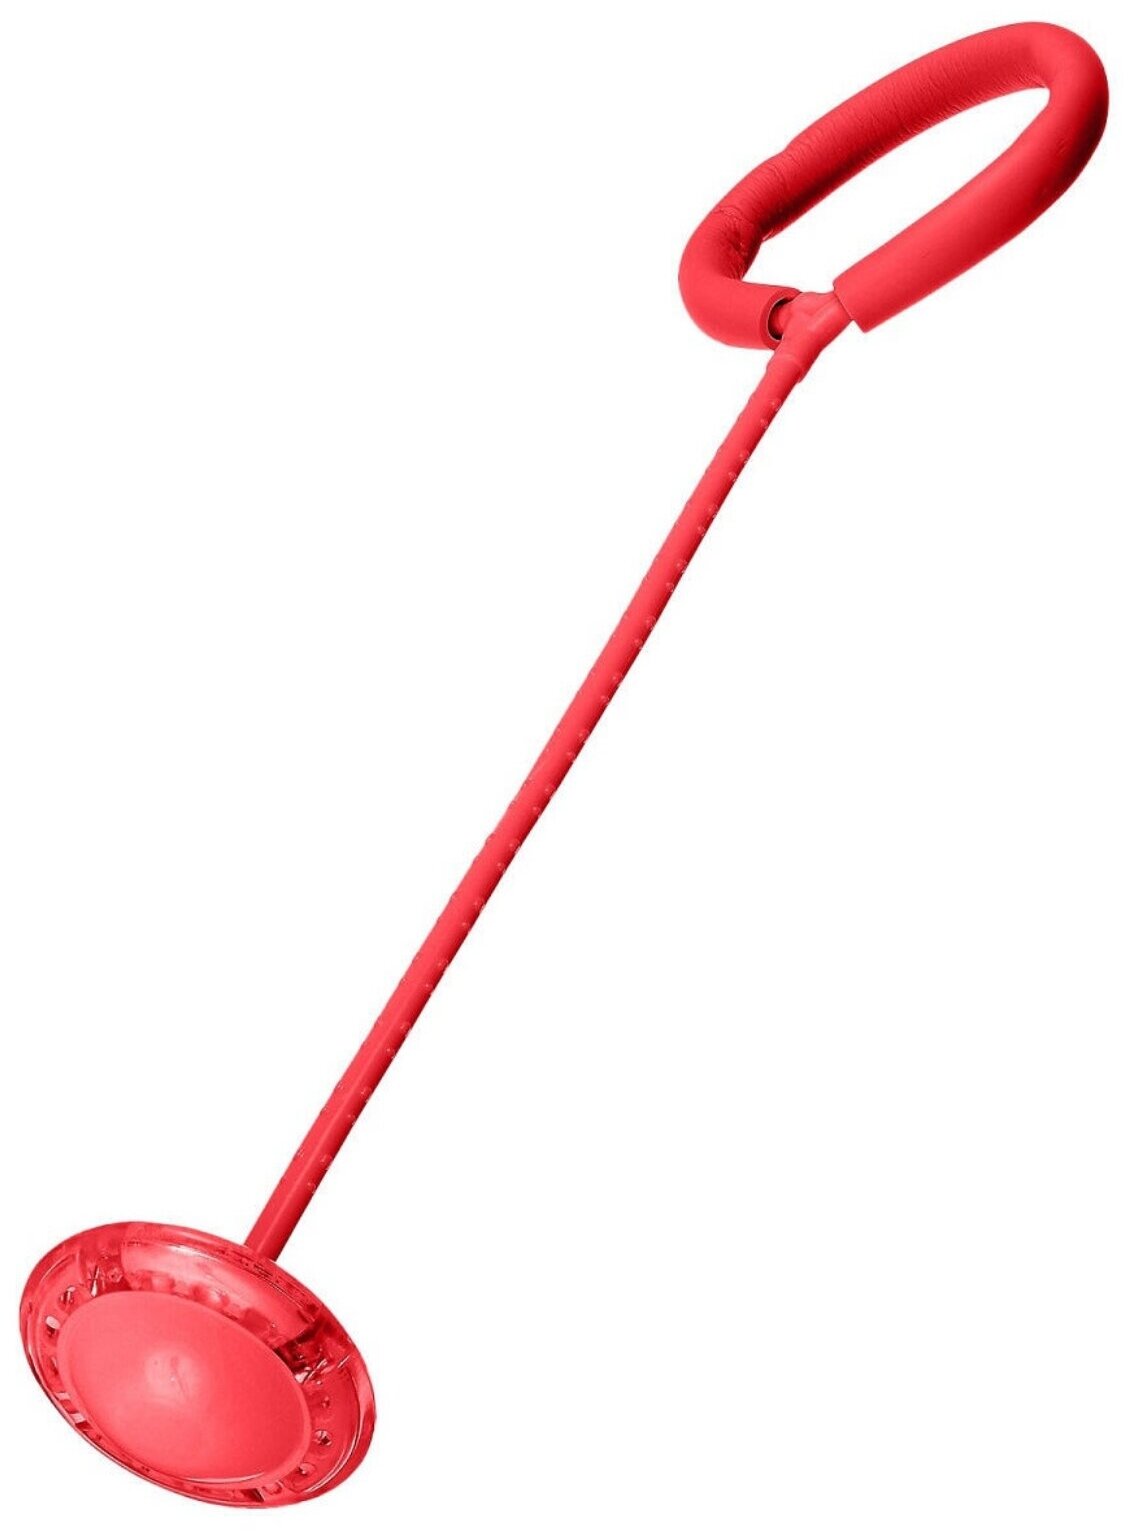 Нейроскакалка Бестселлер, скакалка на ногу со светодиодным роликом красный